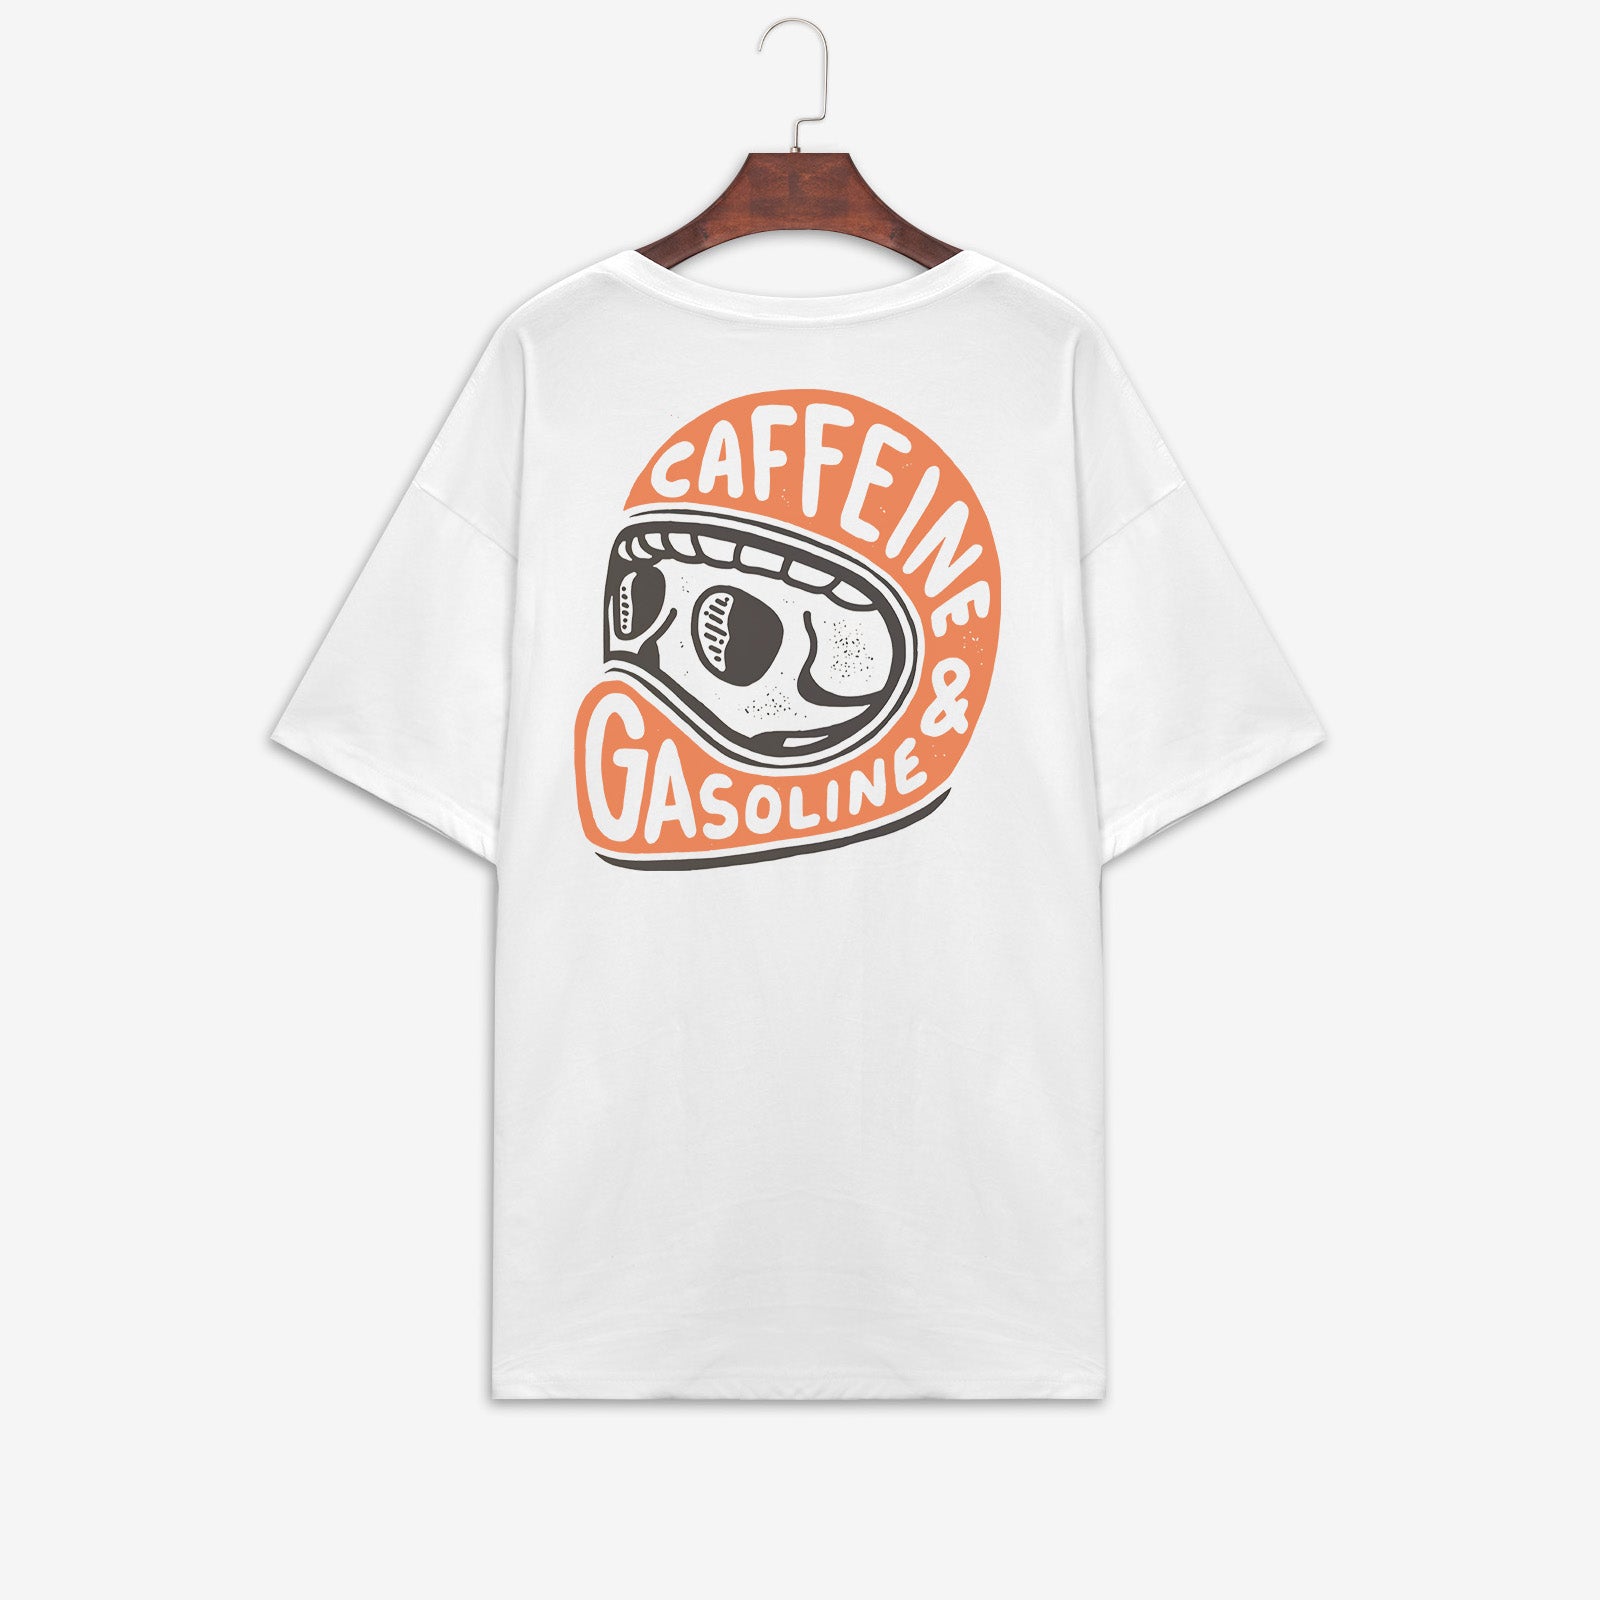 Minnieskull Cool Caffeine Gasoline Skull Print T-Shirt